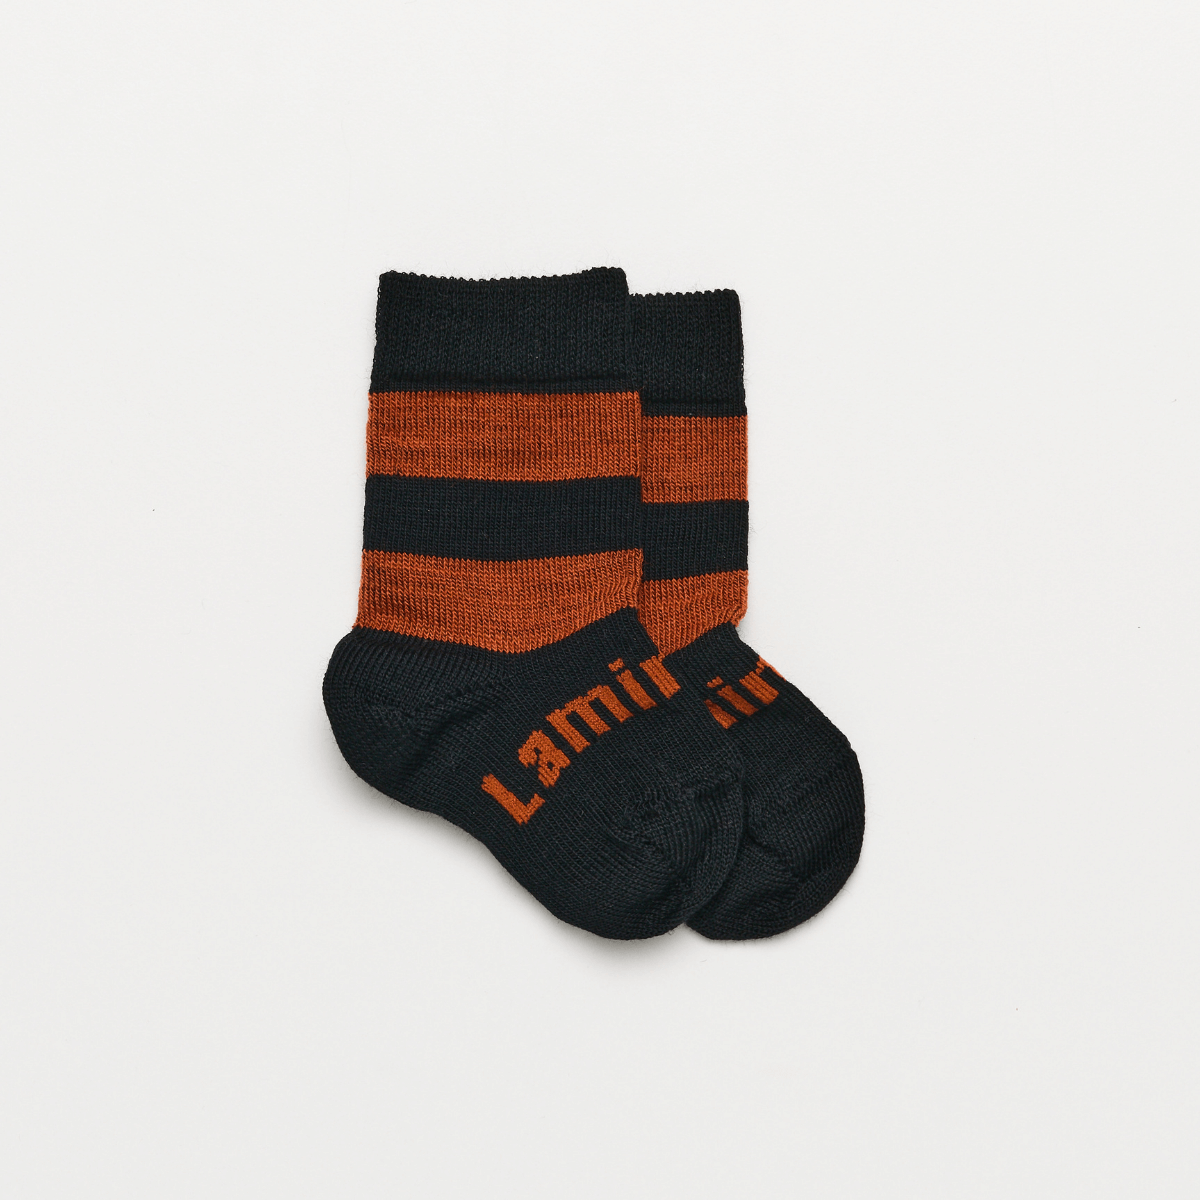 merino wool baby socks black and rust